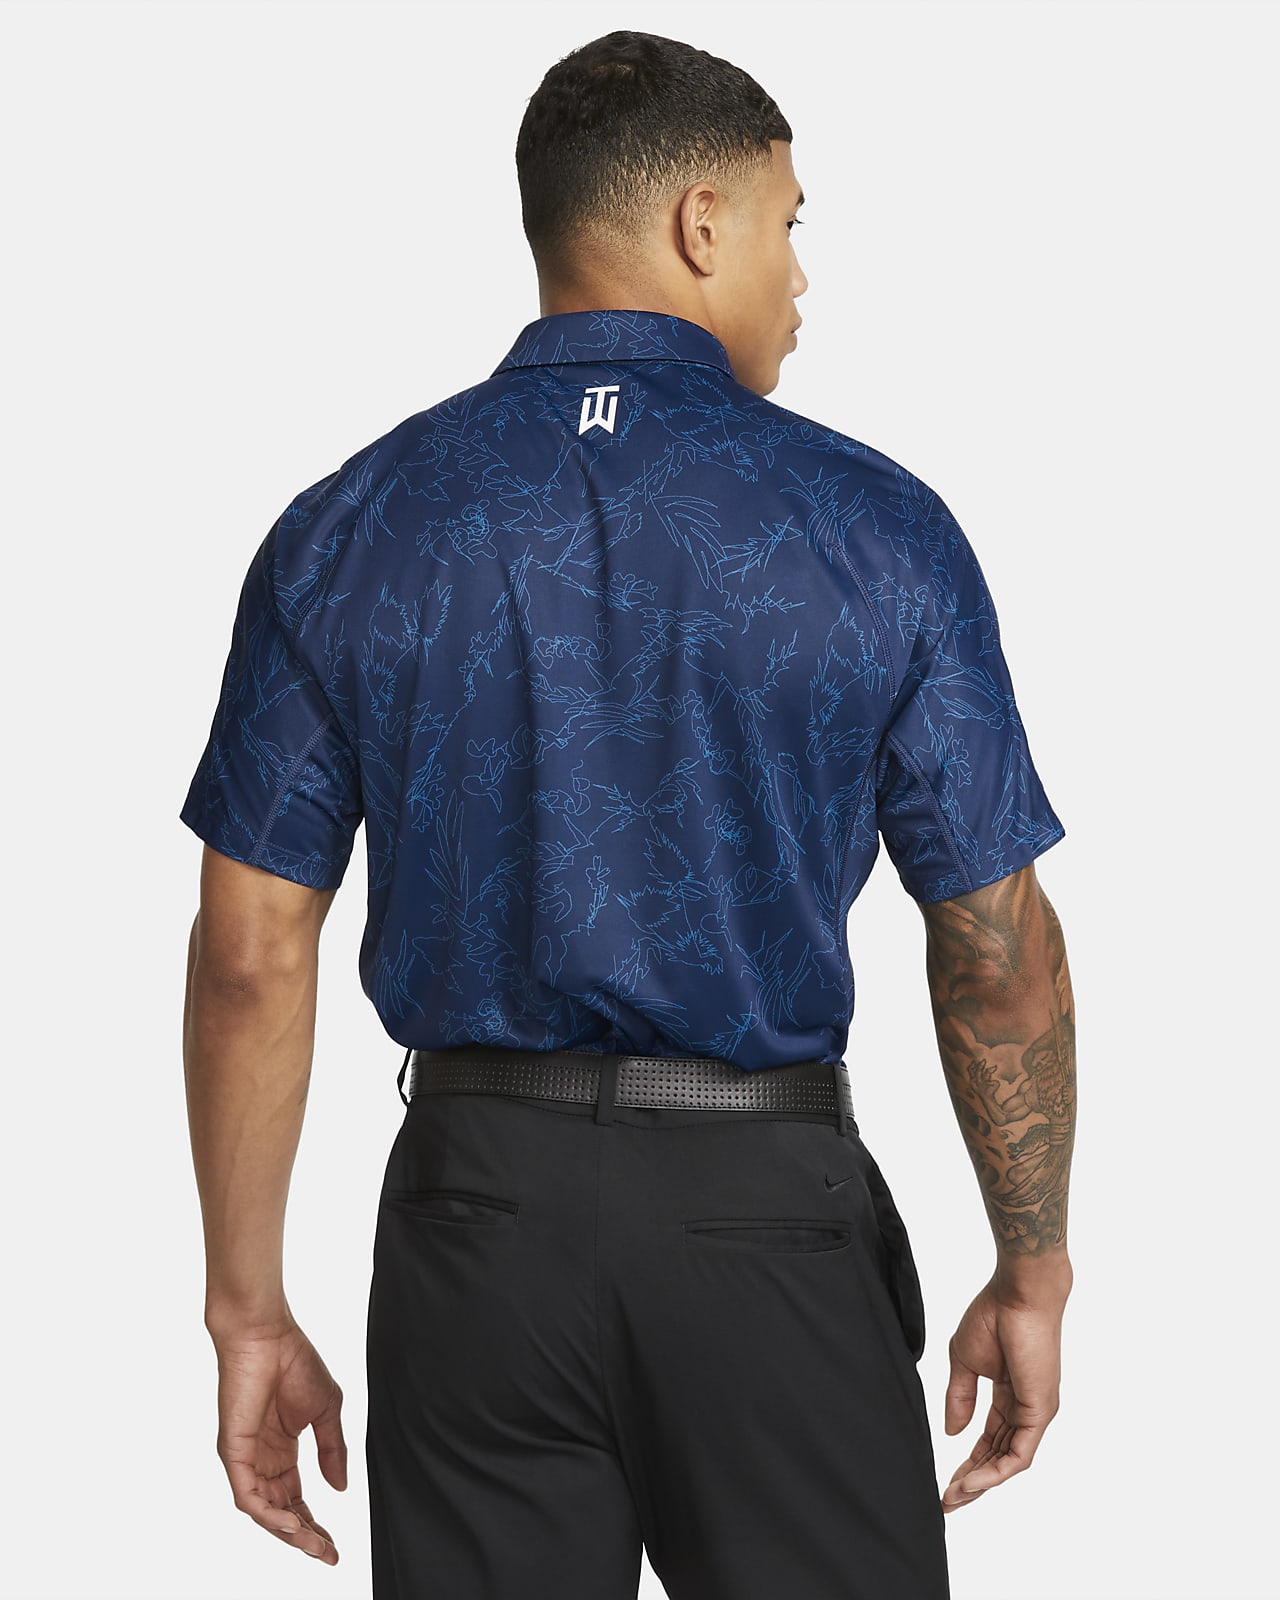 Nike mens Dri-Fit ADV Tiger Woods Golf Polo Shirt